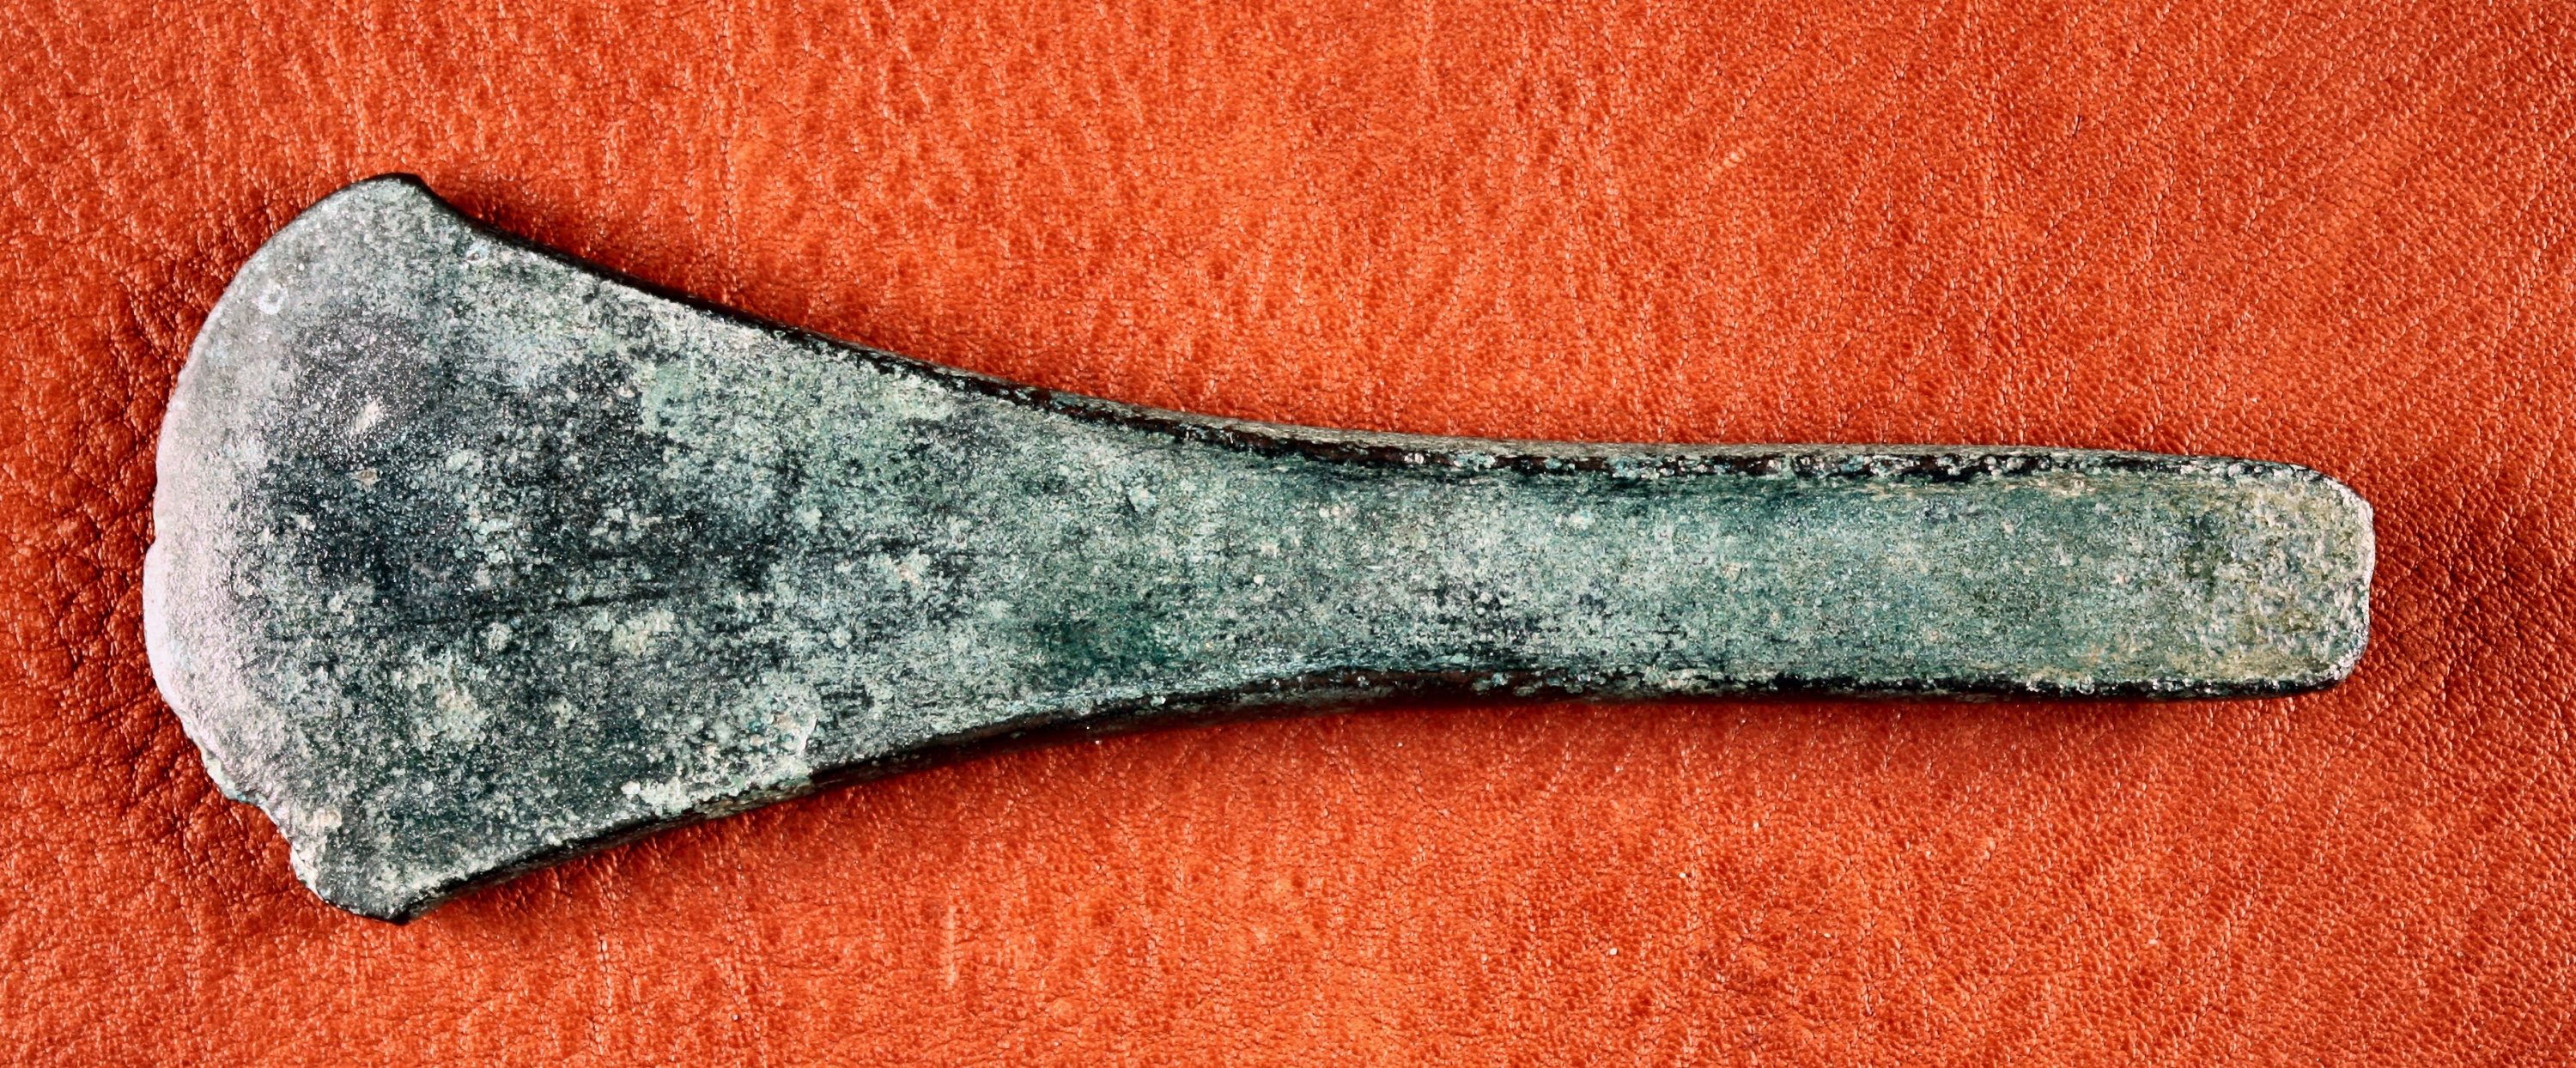 Randleistenbeil aus dem Hortfund von Kläden bei Stendal (Johann-Friedrich-Danneil-Museum Salzwedel CC BY-NC-SA)